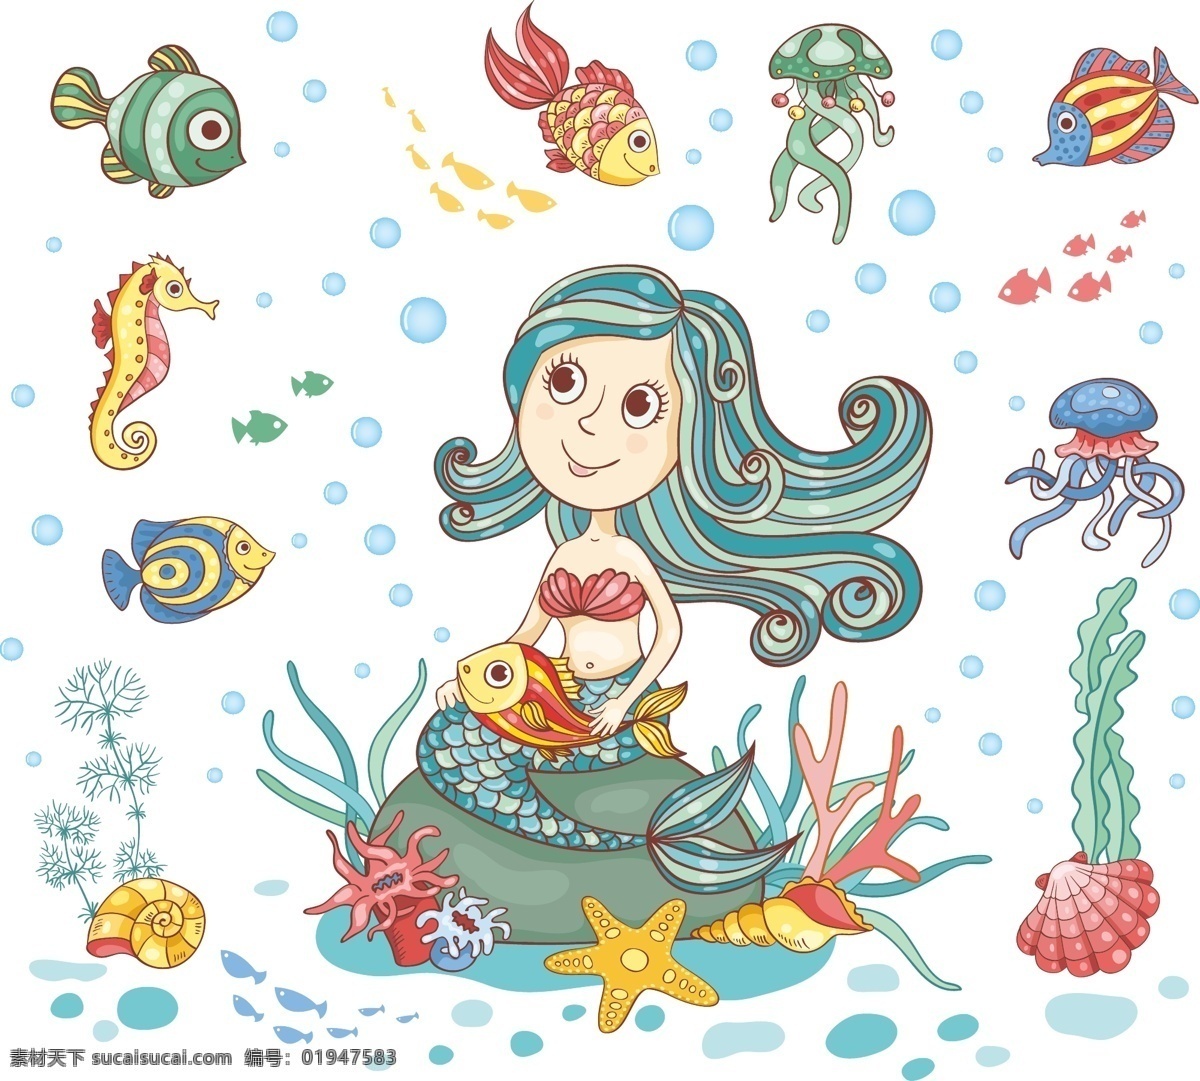 卡通美人女 卡通 矢量 海洋 海底世界 鱼 美人鱼 漂亮 热带鱼 海马 章鱼 水草 水母 海鲜 泡泡